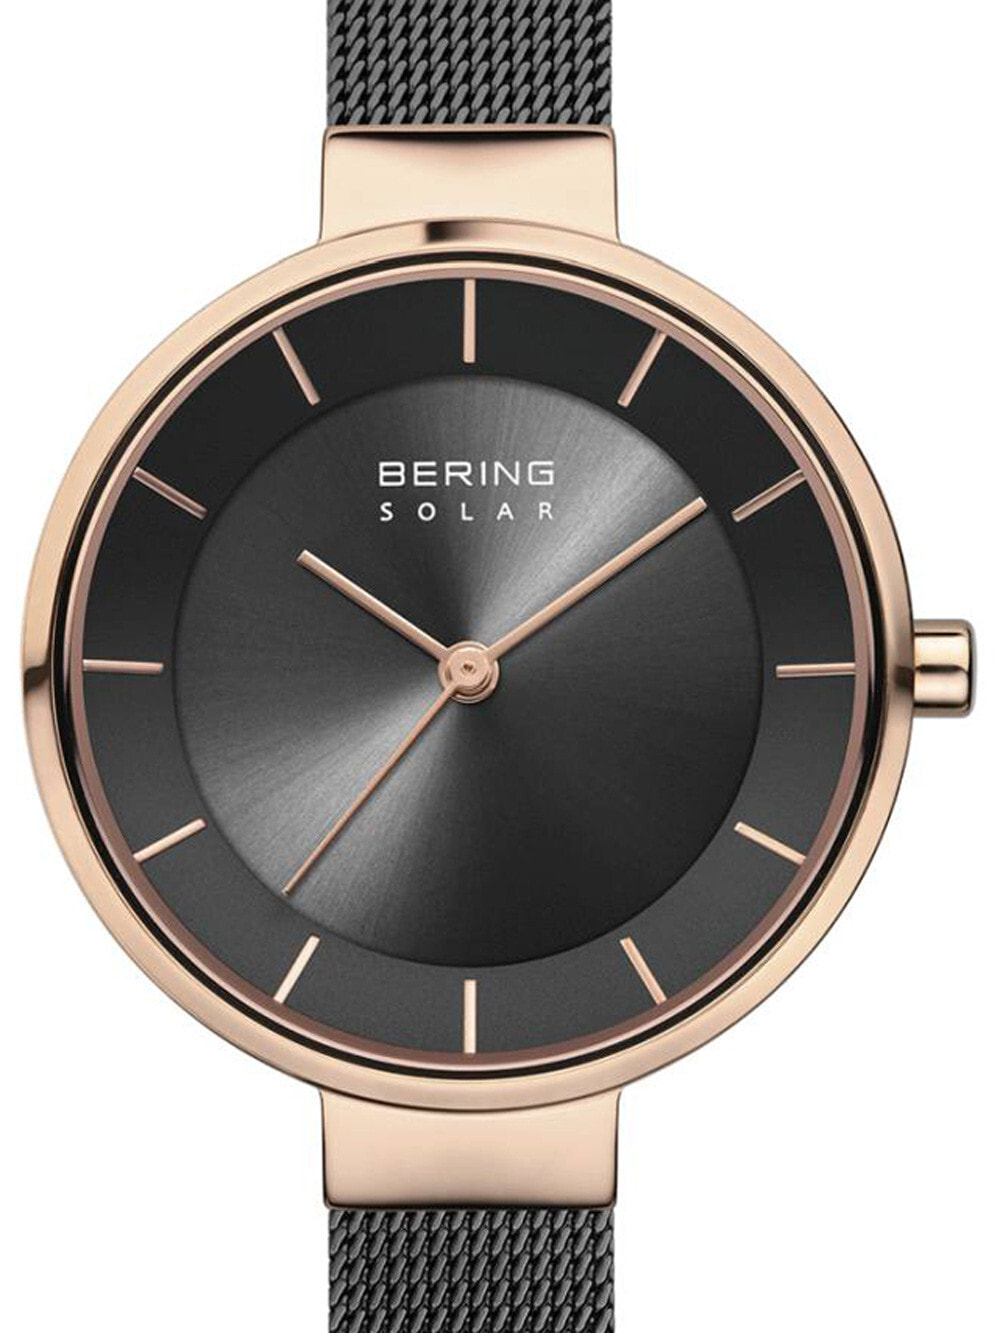 Женские наручные часы с черным браслетом Bering 14631-166 solar ladies 31mm 5ATM